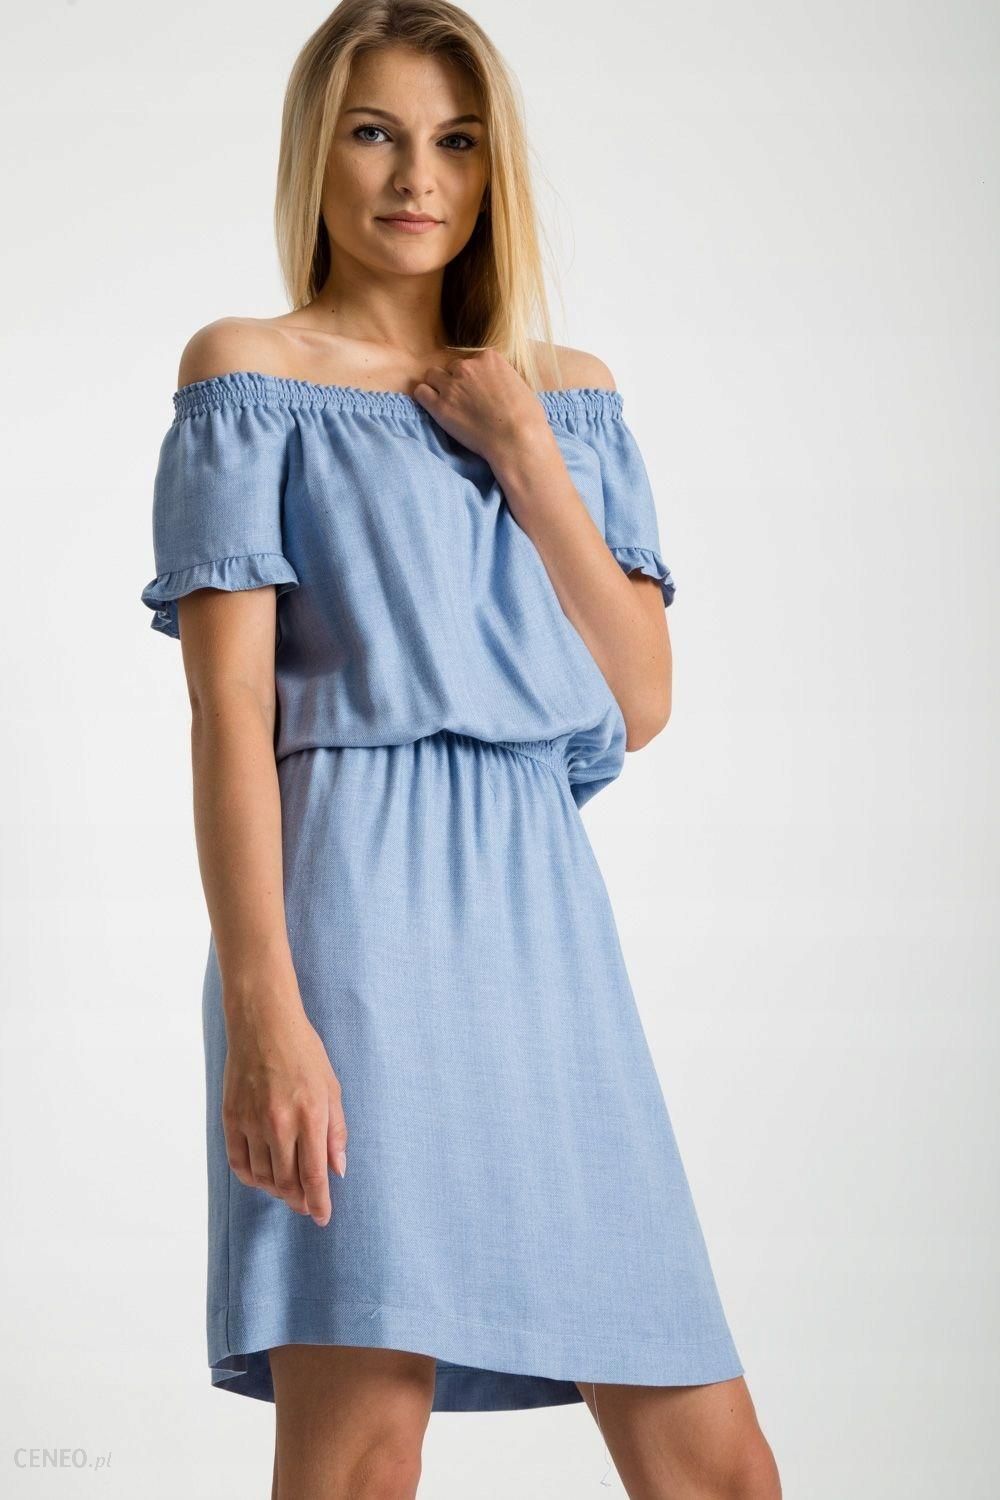 Bialcon Błękitna sukienka ze ściągaczem w talii - Ceny i opinie 